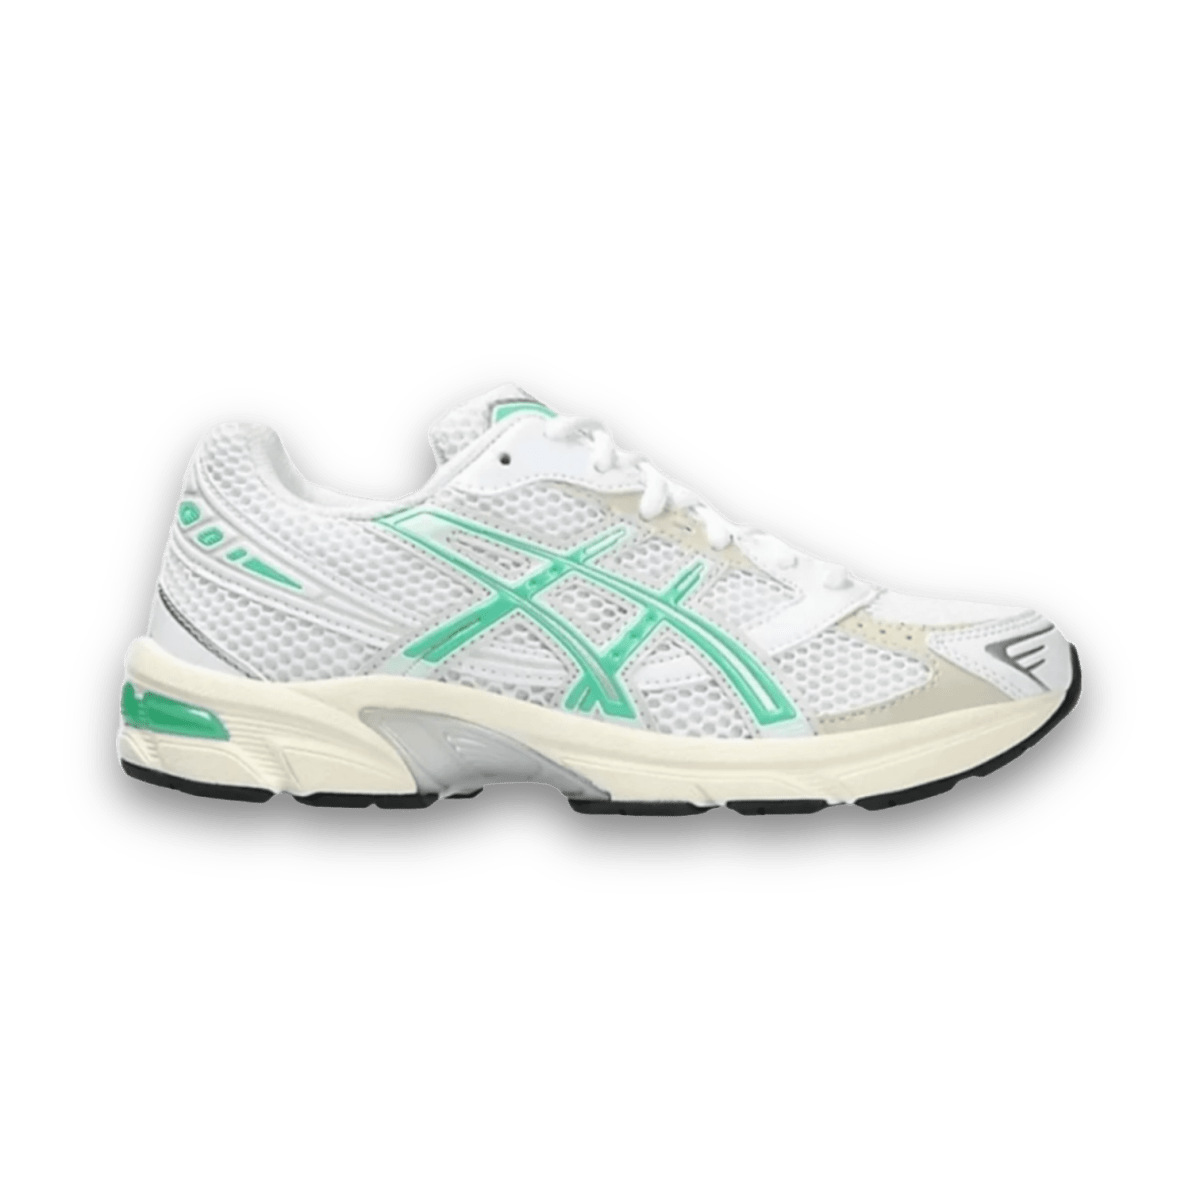 Asics Gel 1130 White Malachite Green - Women - Low Sneaker - Jawns on Fire Sneakers & Streetwear